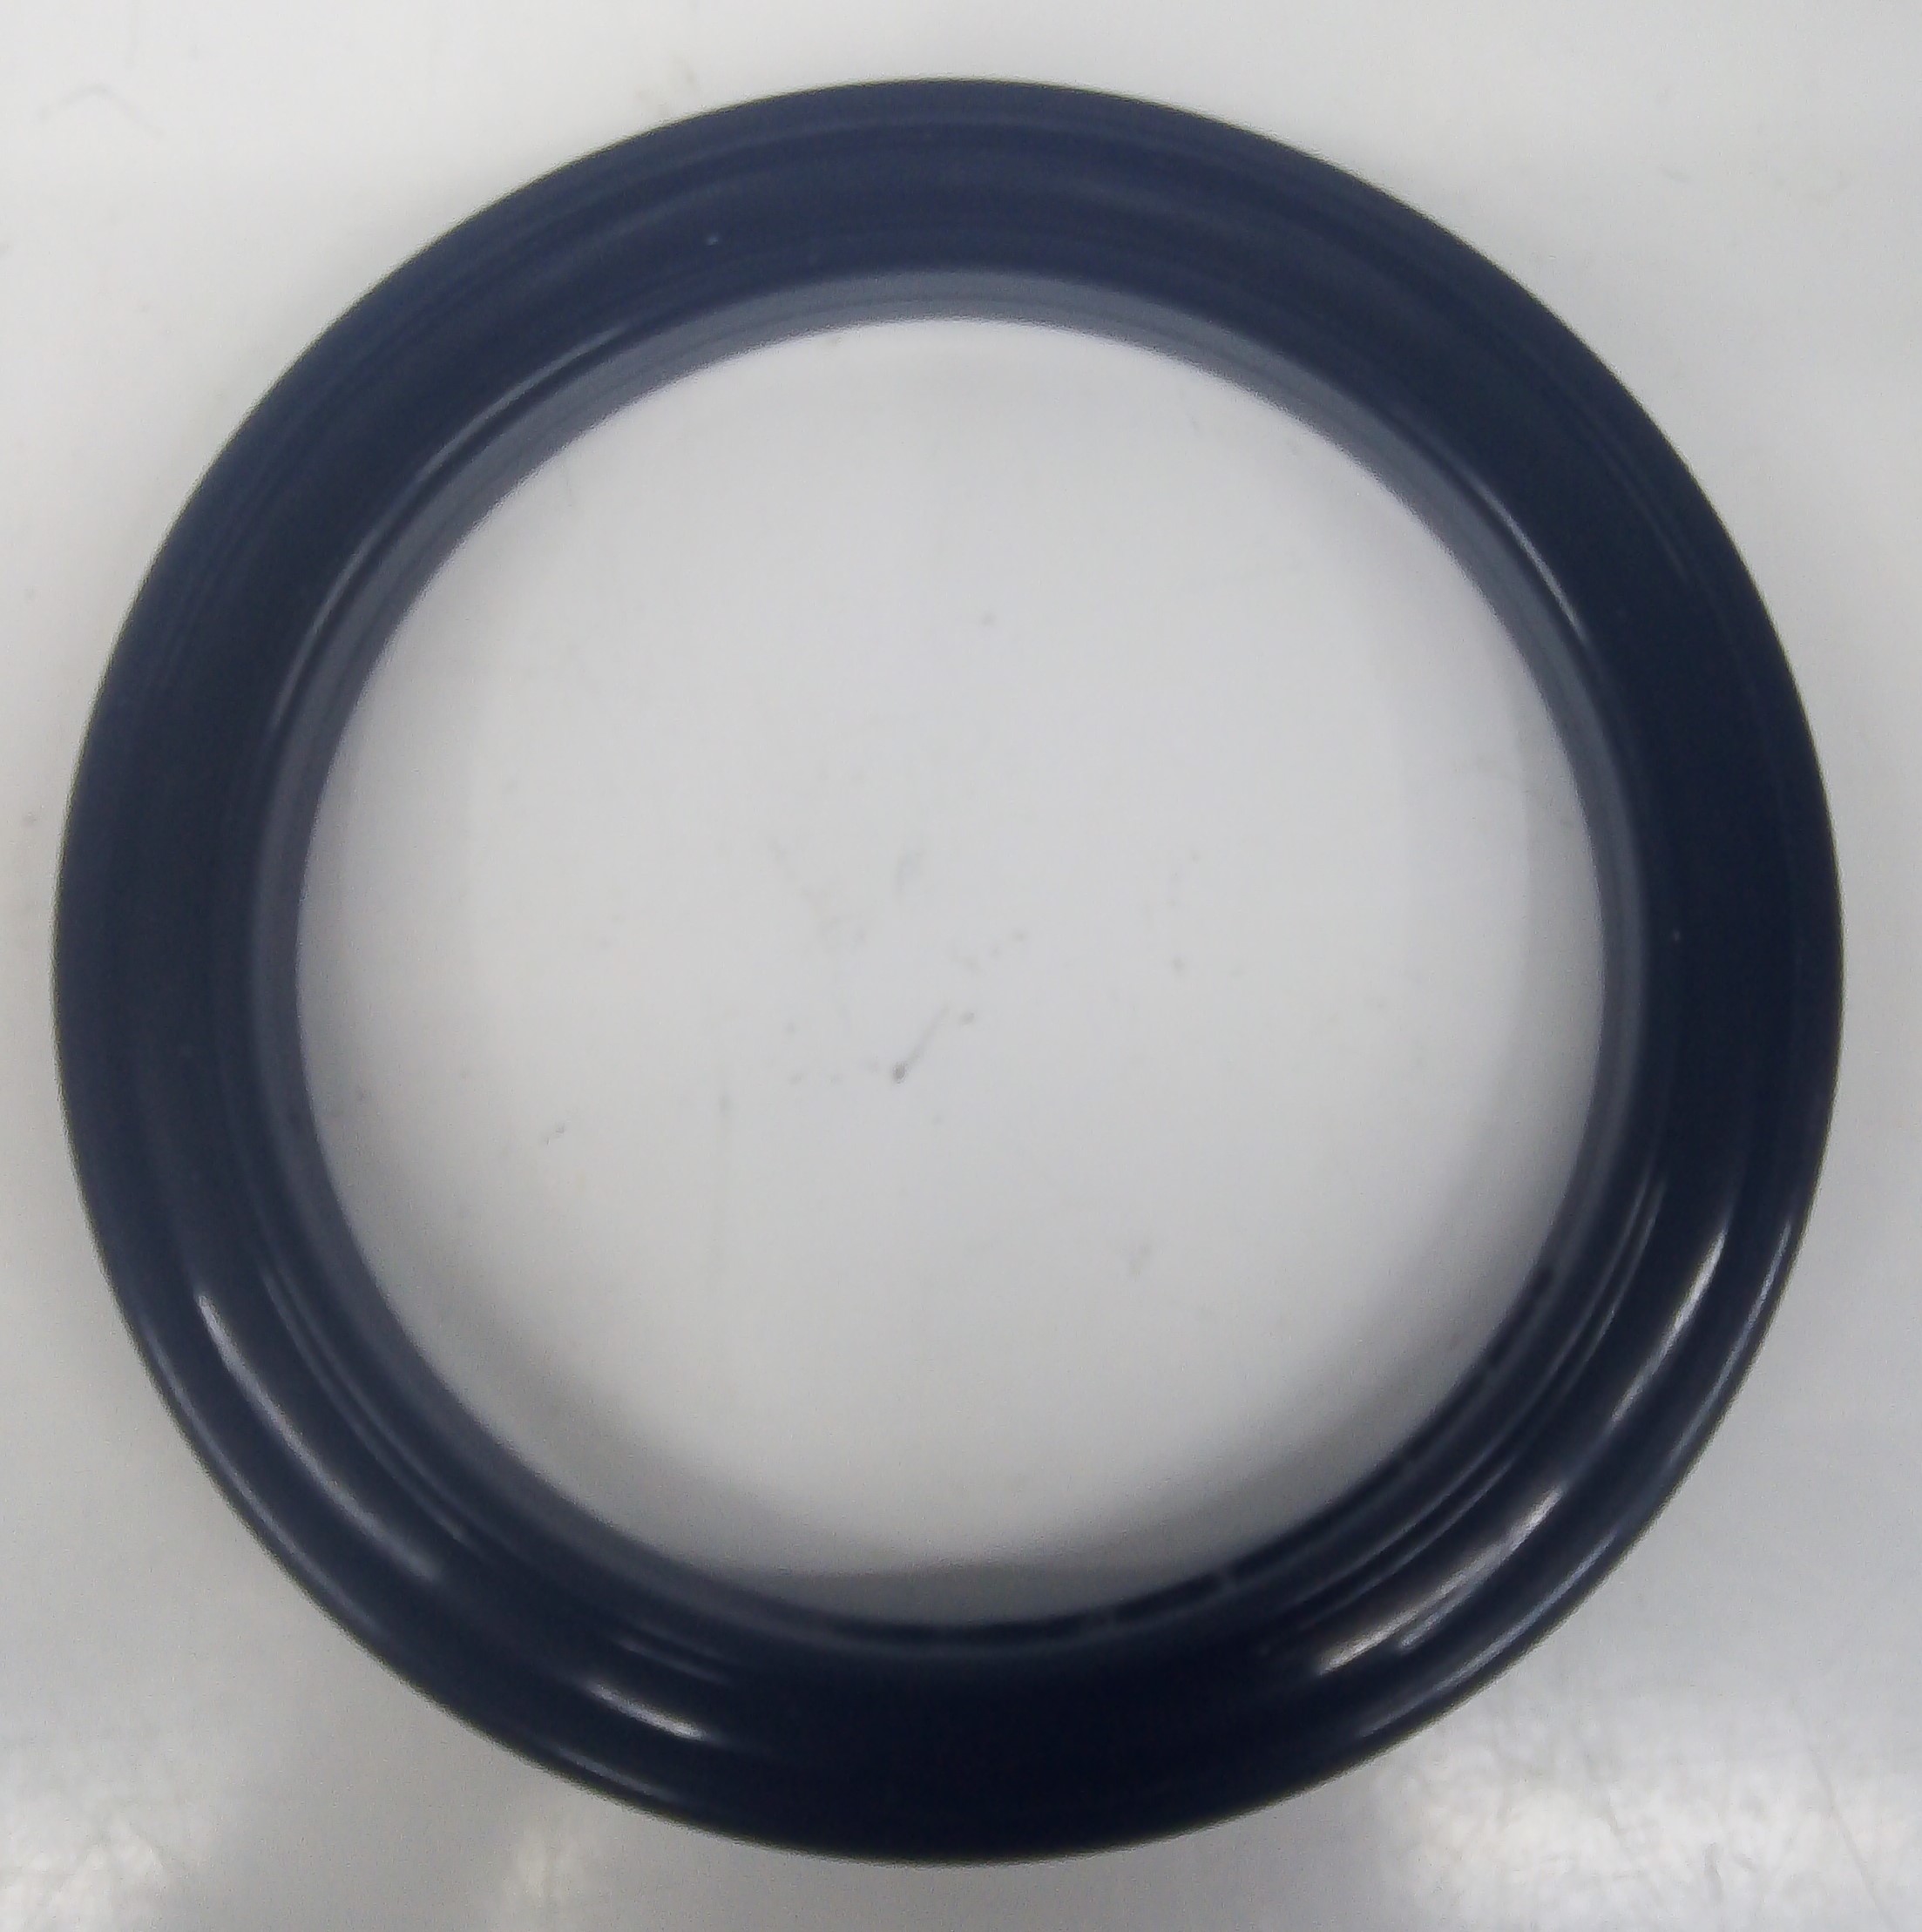 Кольцо фрикционное (полиуретан) на диск диаметром 100мм, широкий профиль, для снегоуборщиков